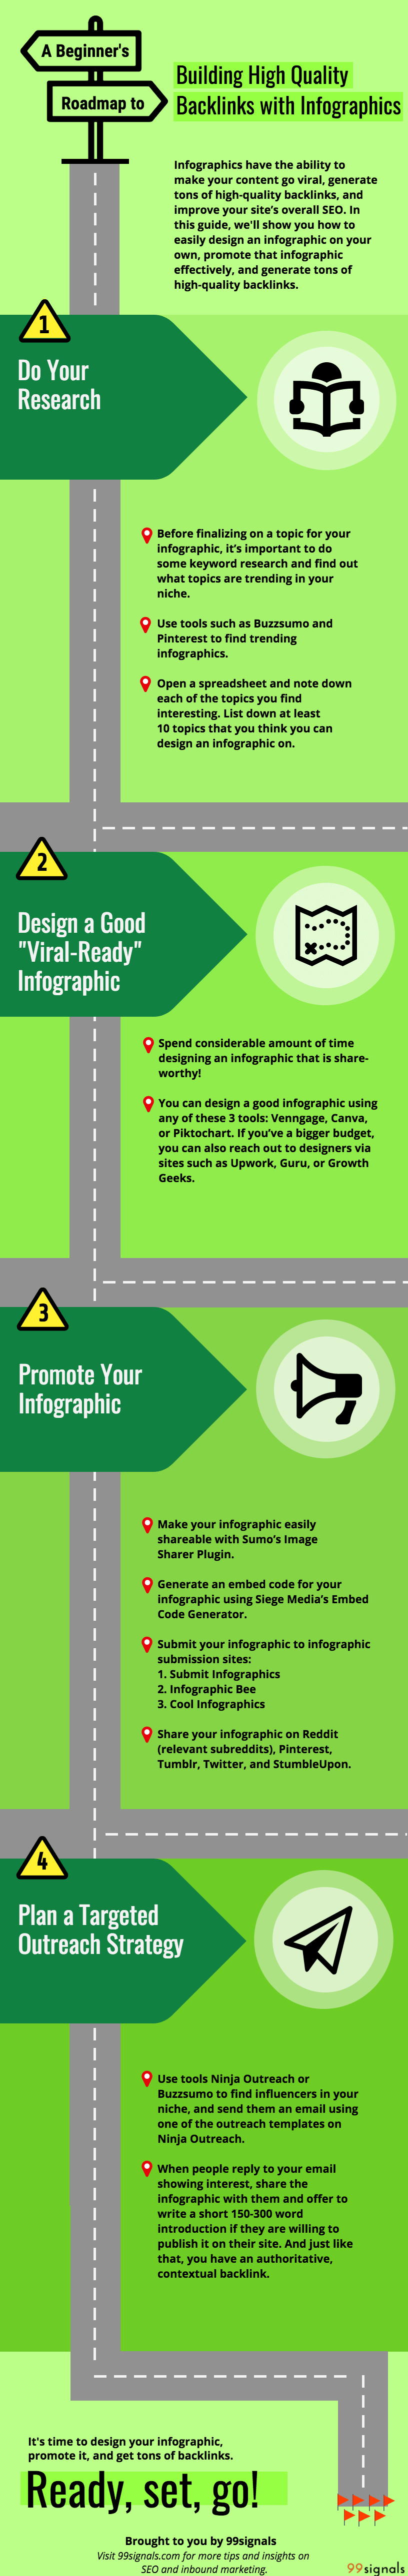 Infografica: una tabella di marcia per principianti per la creazione di backlink di alta qualità con infografica